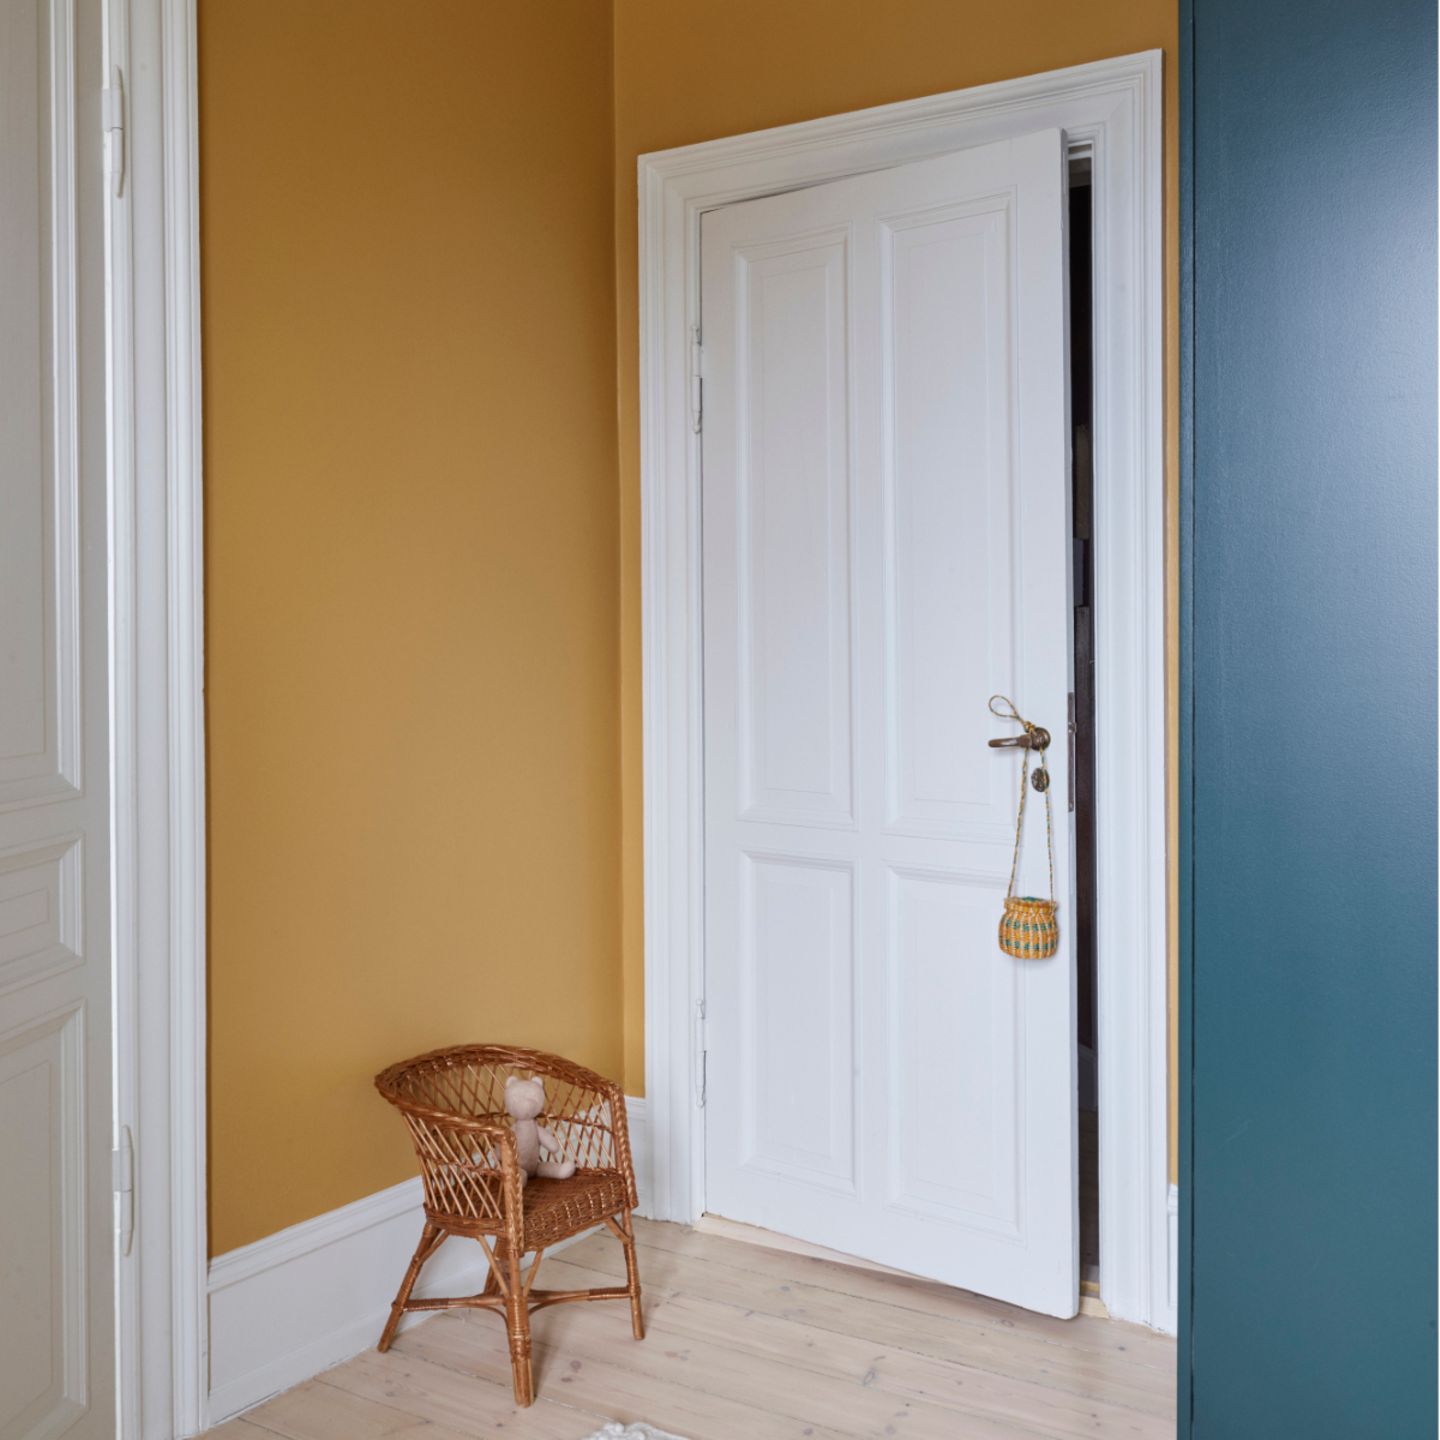 Weiß lackierte Tür mit passendem Türrahmen an gelber Wand mit Korbstuhl